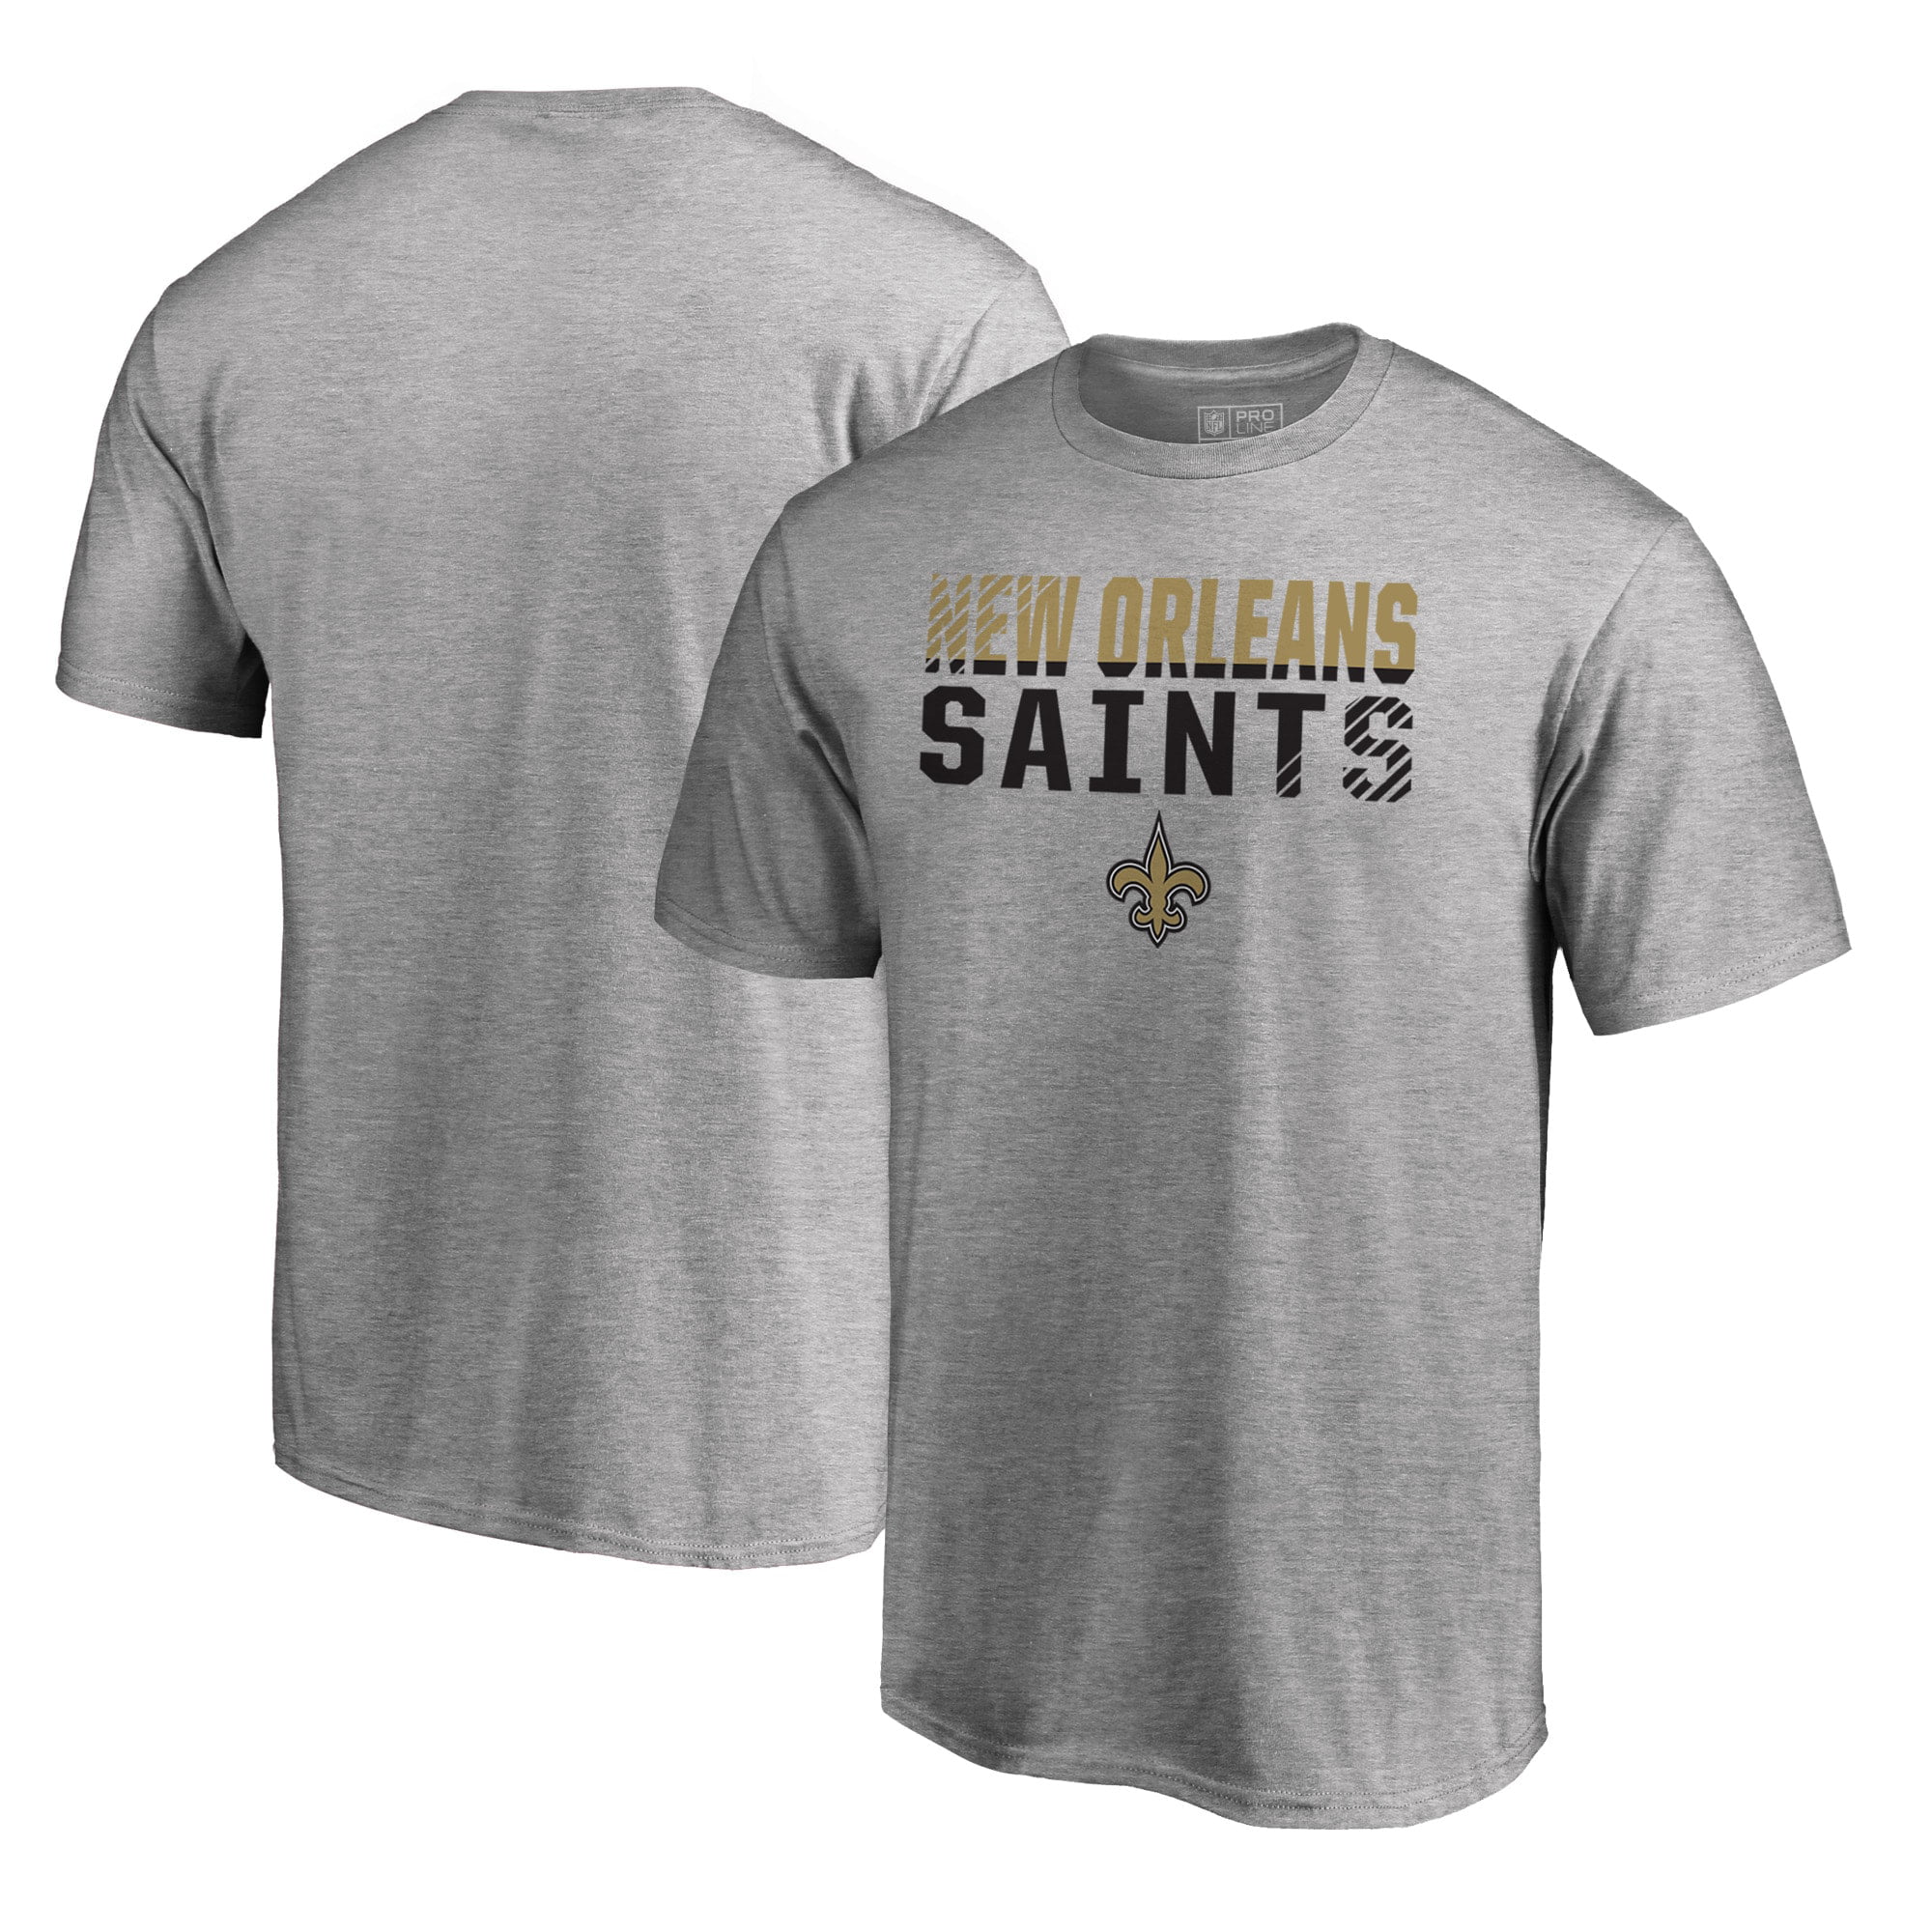 new orleans saints shirts